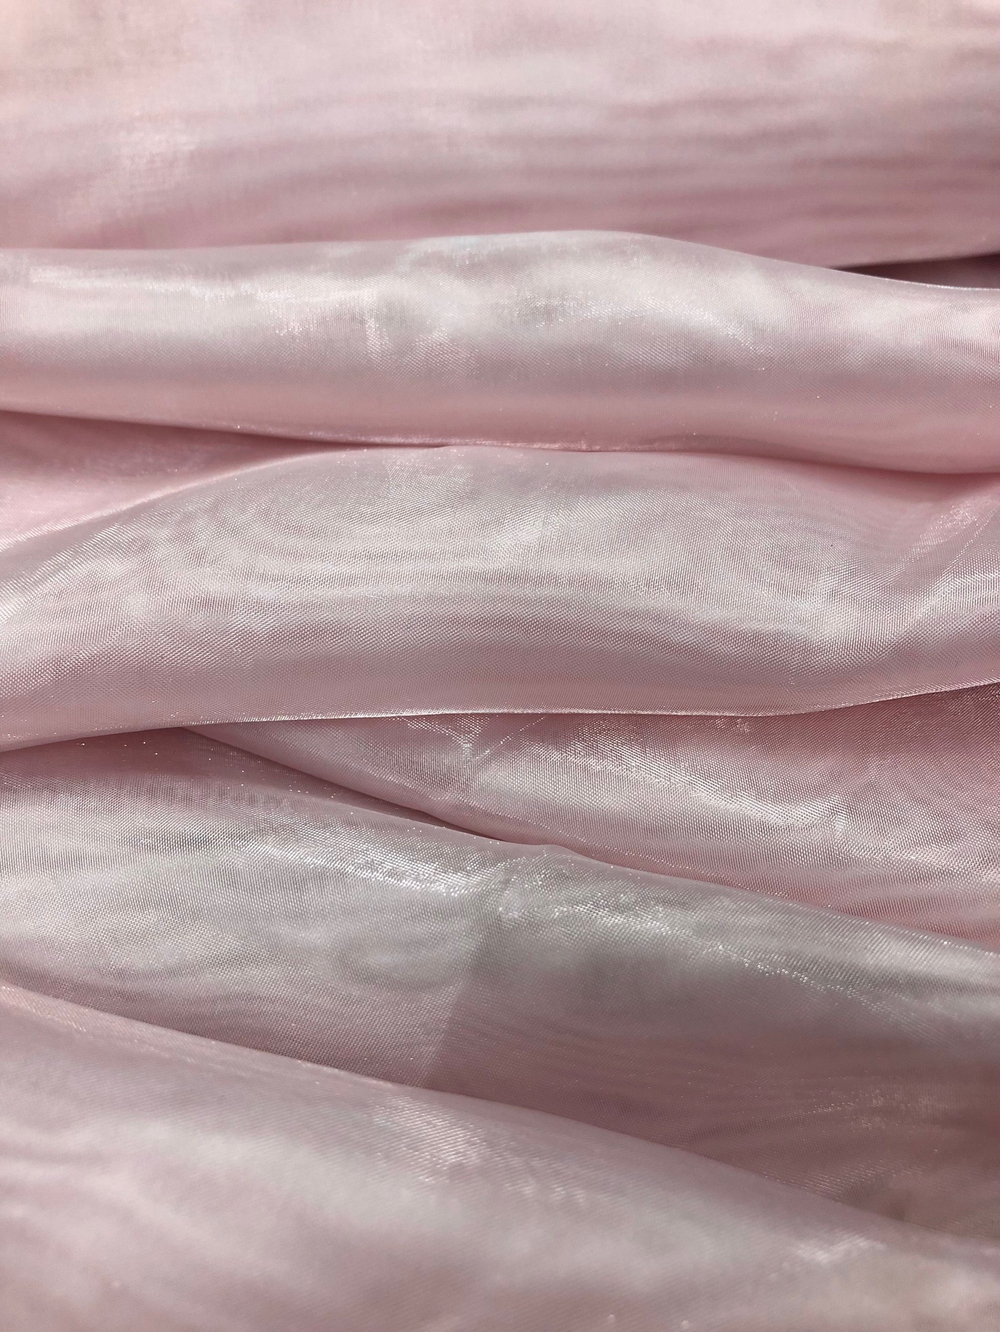 Ткань однотонная Полуорганза розовая с утяжелителем, арт. 327479